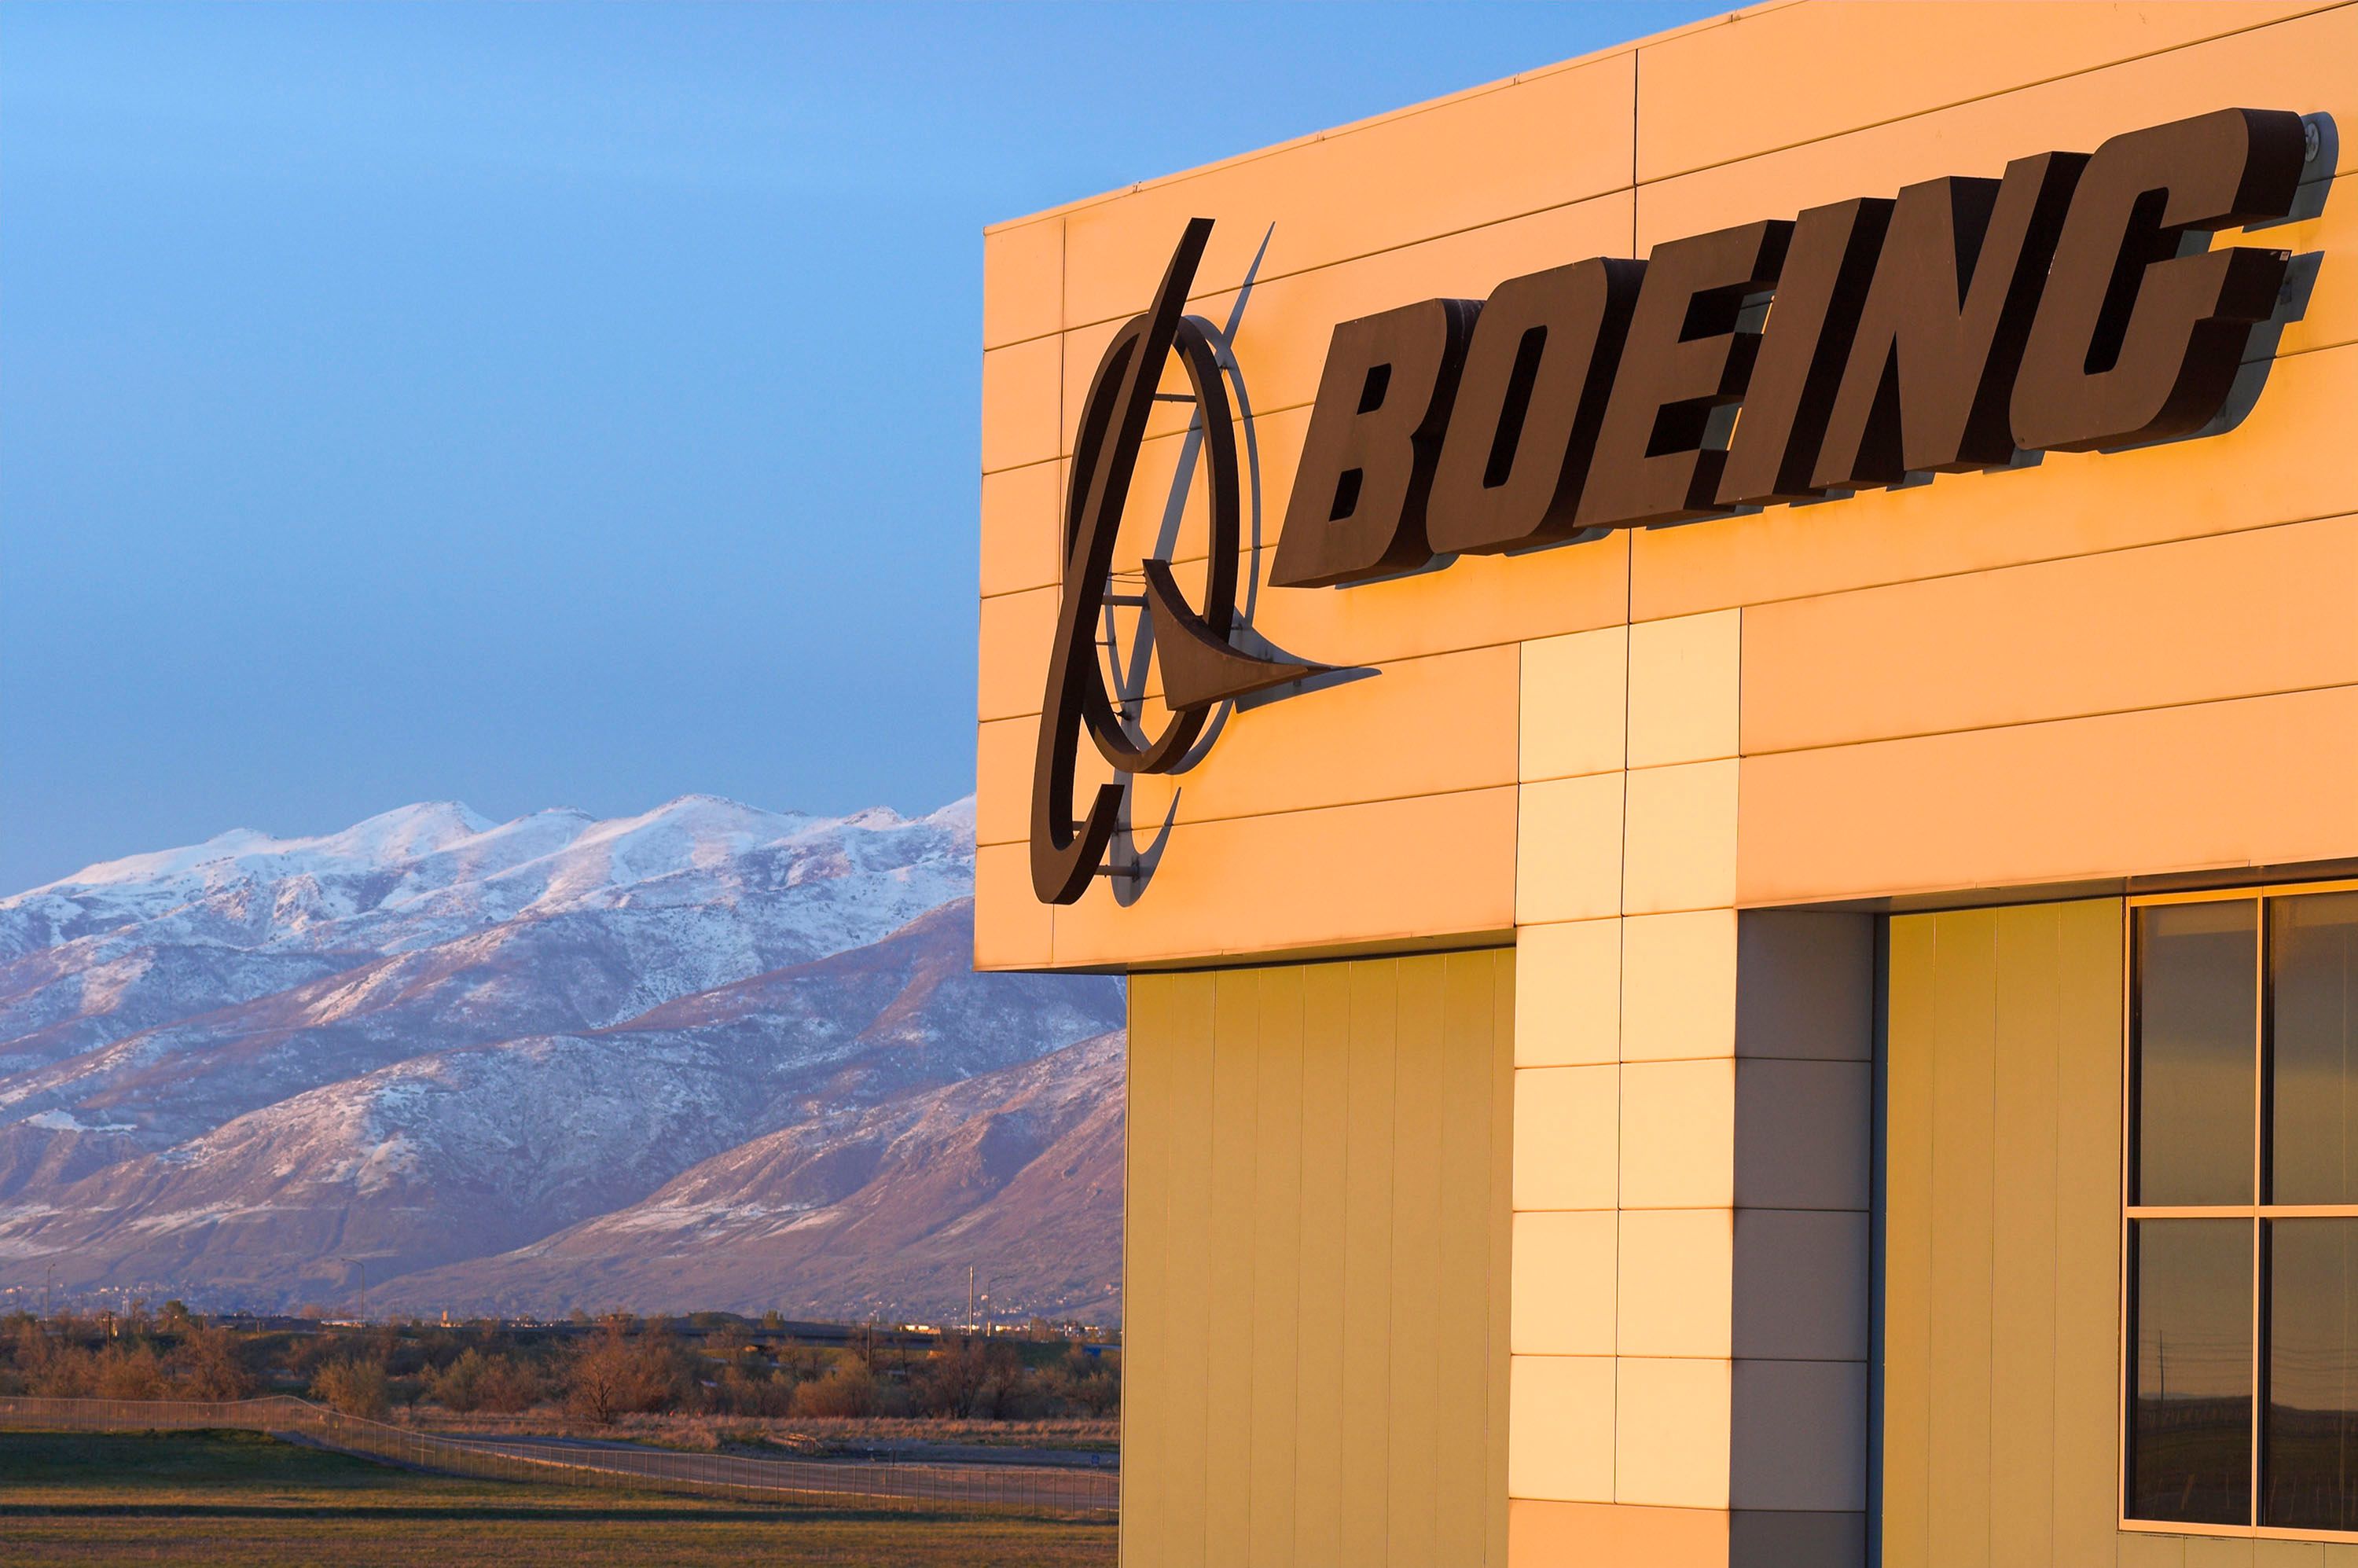 Boeing Facilities in Salt Lake City.